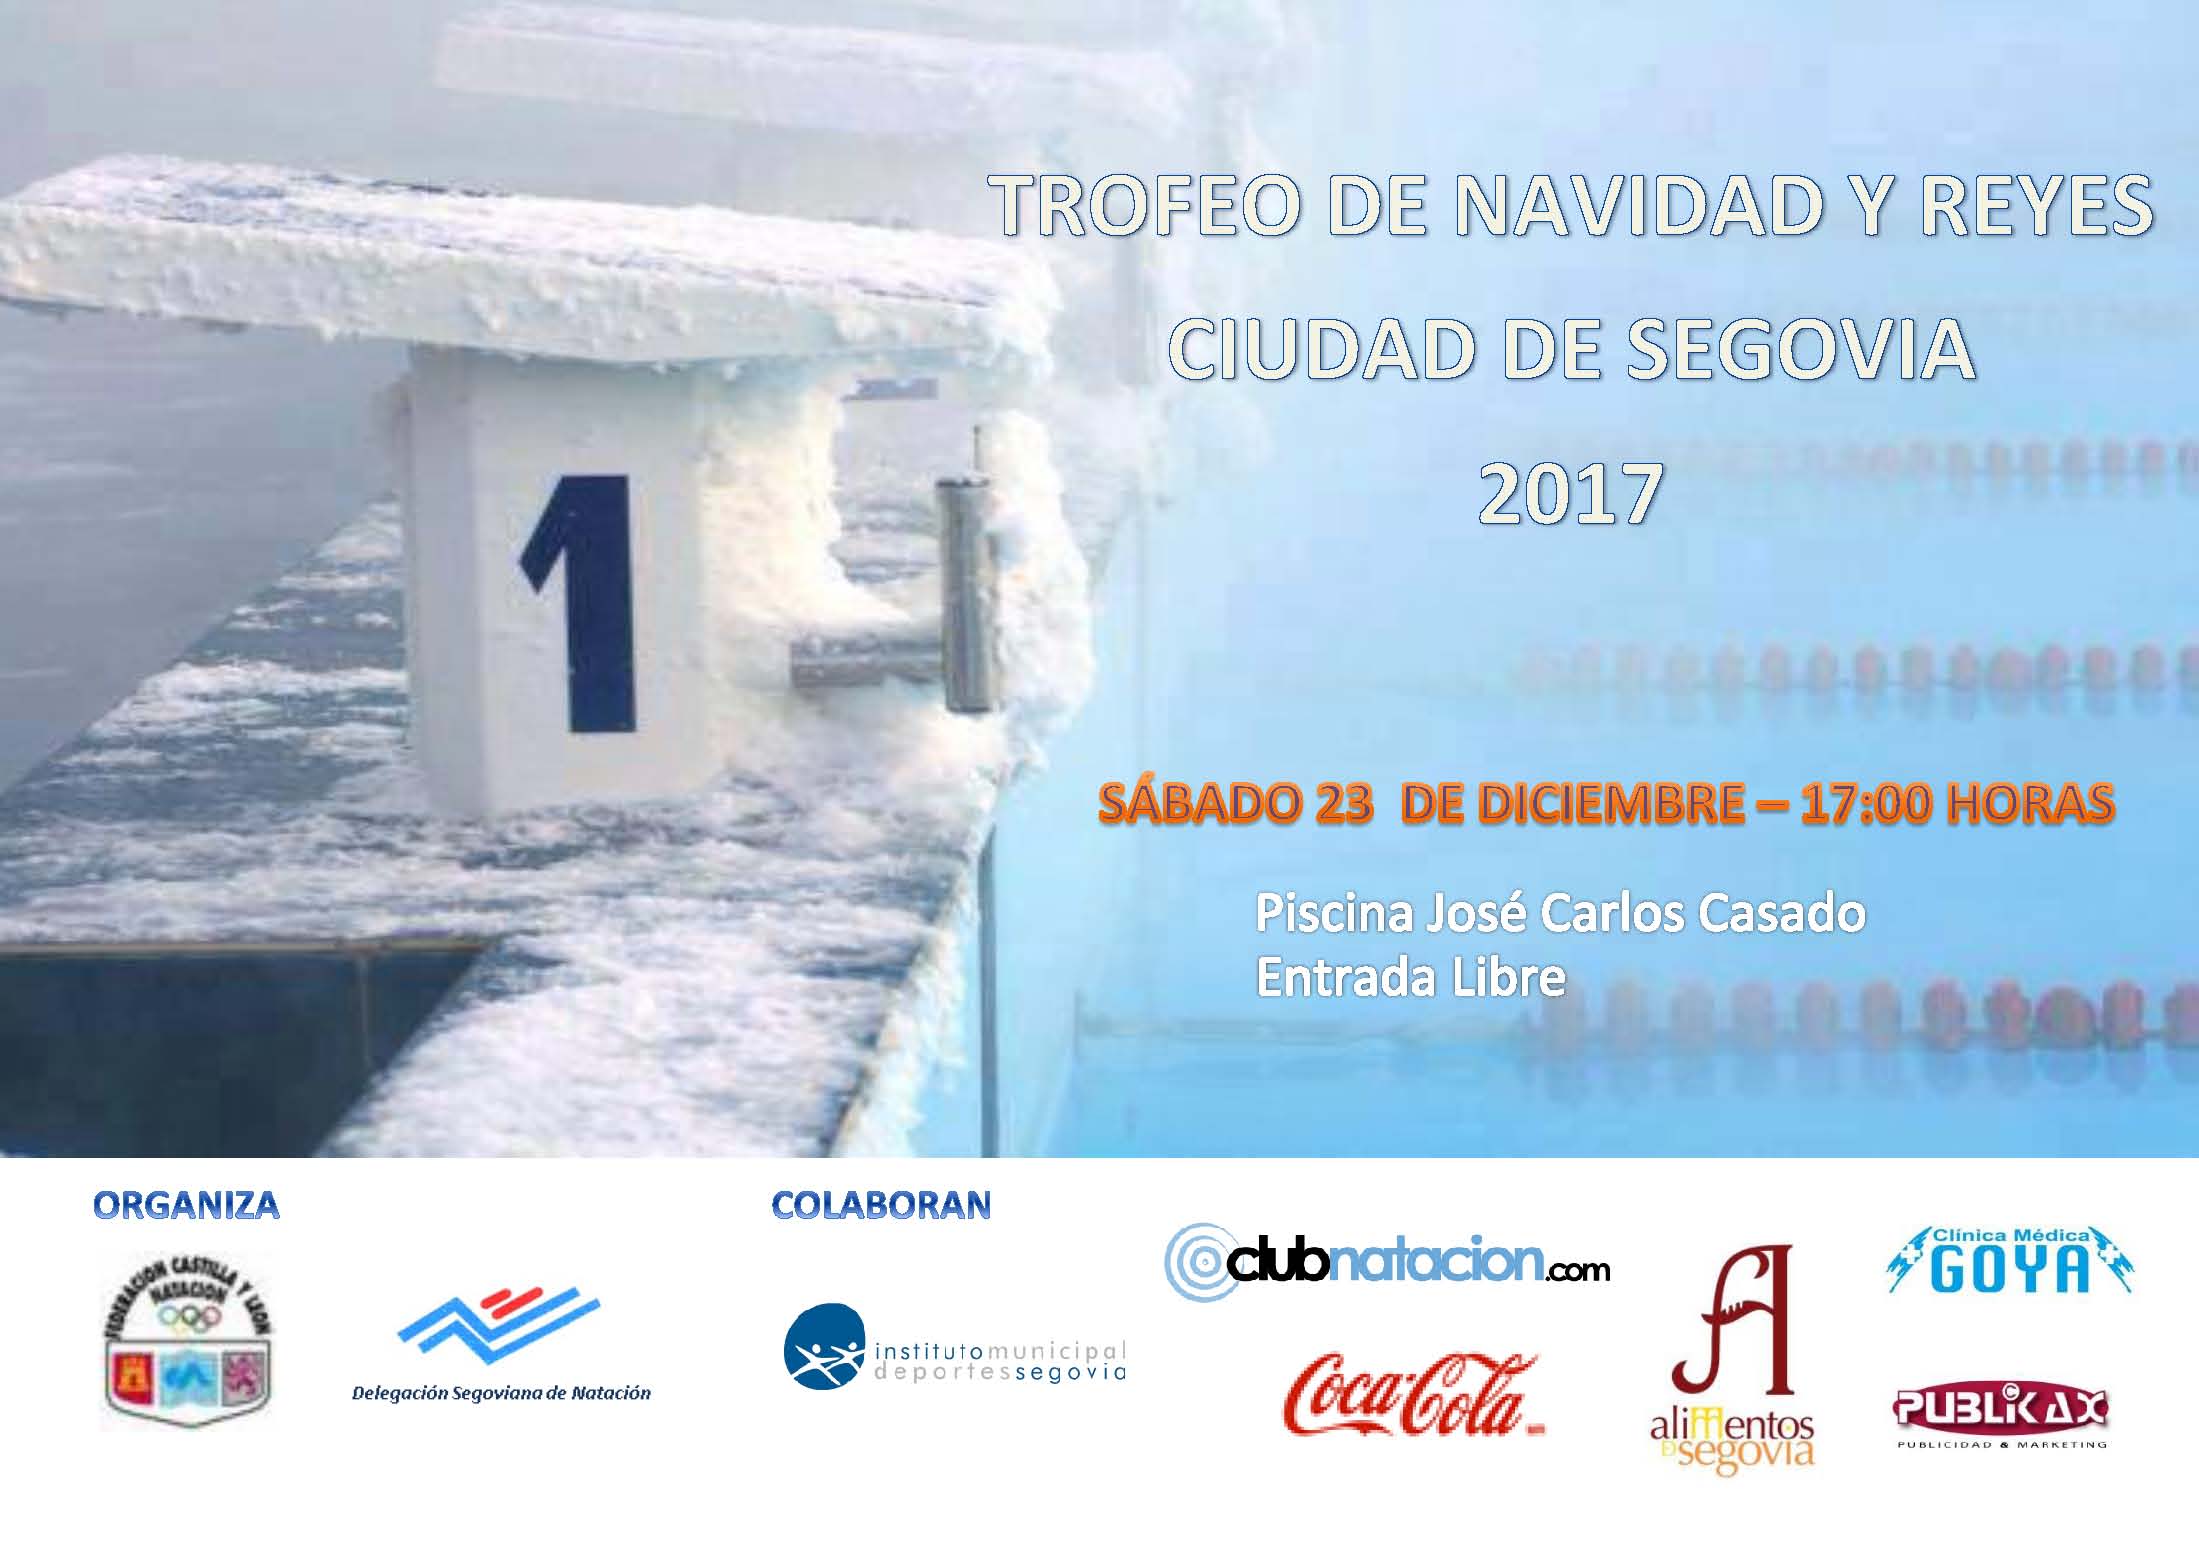 Trofeo de Natación de Navidad-Reyes “Ciudad de Segovia”